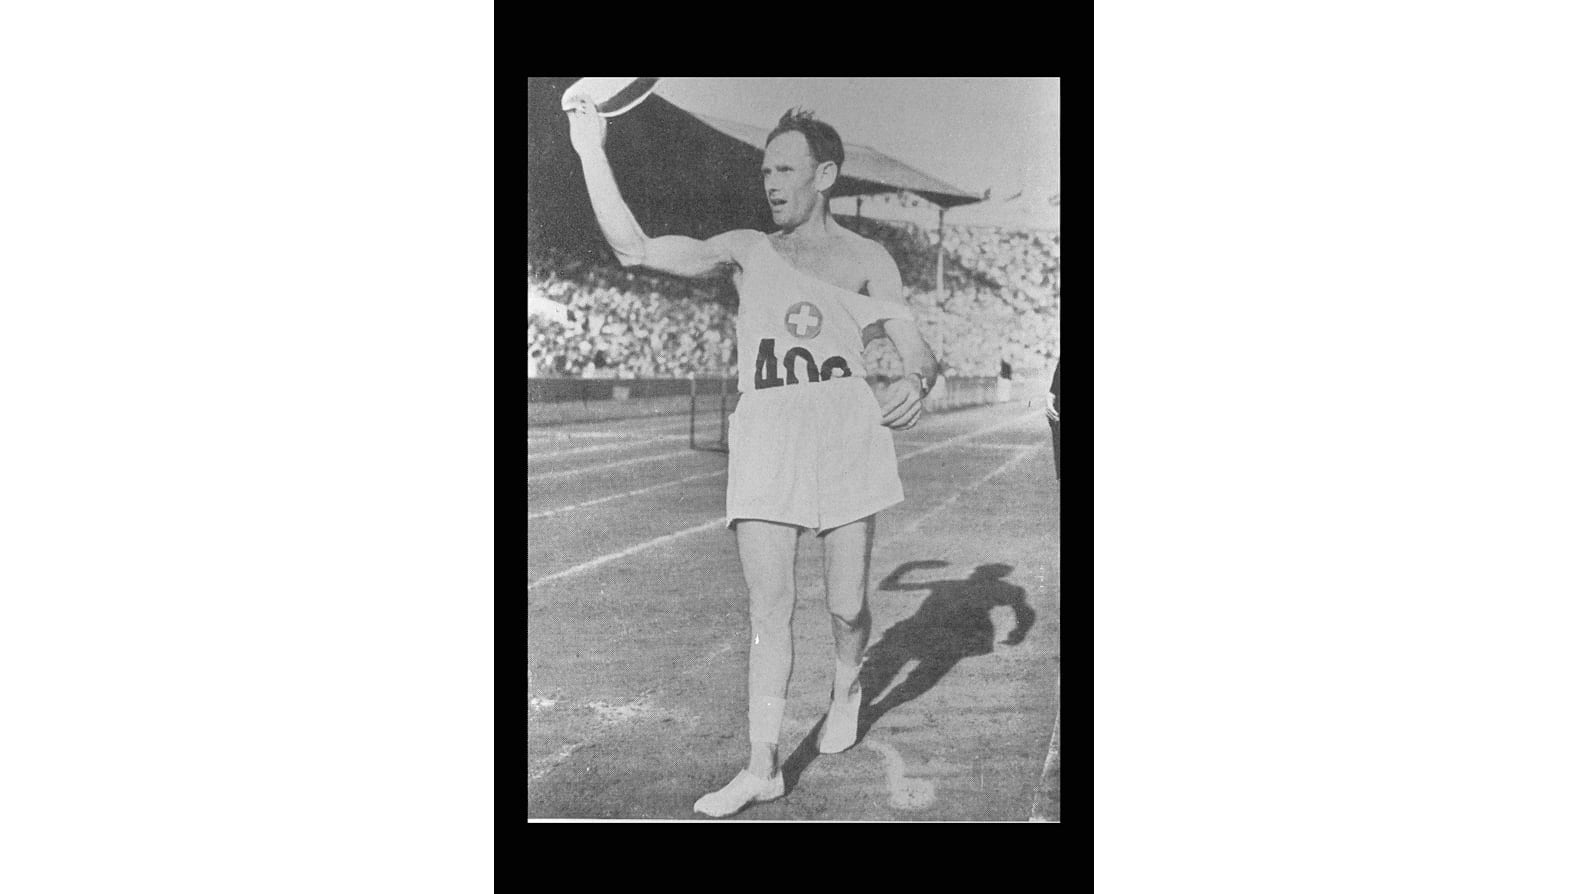 ロンドン1948 夏季オリンピック - アスリート、メダル、結果